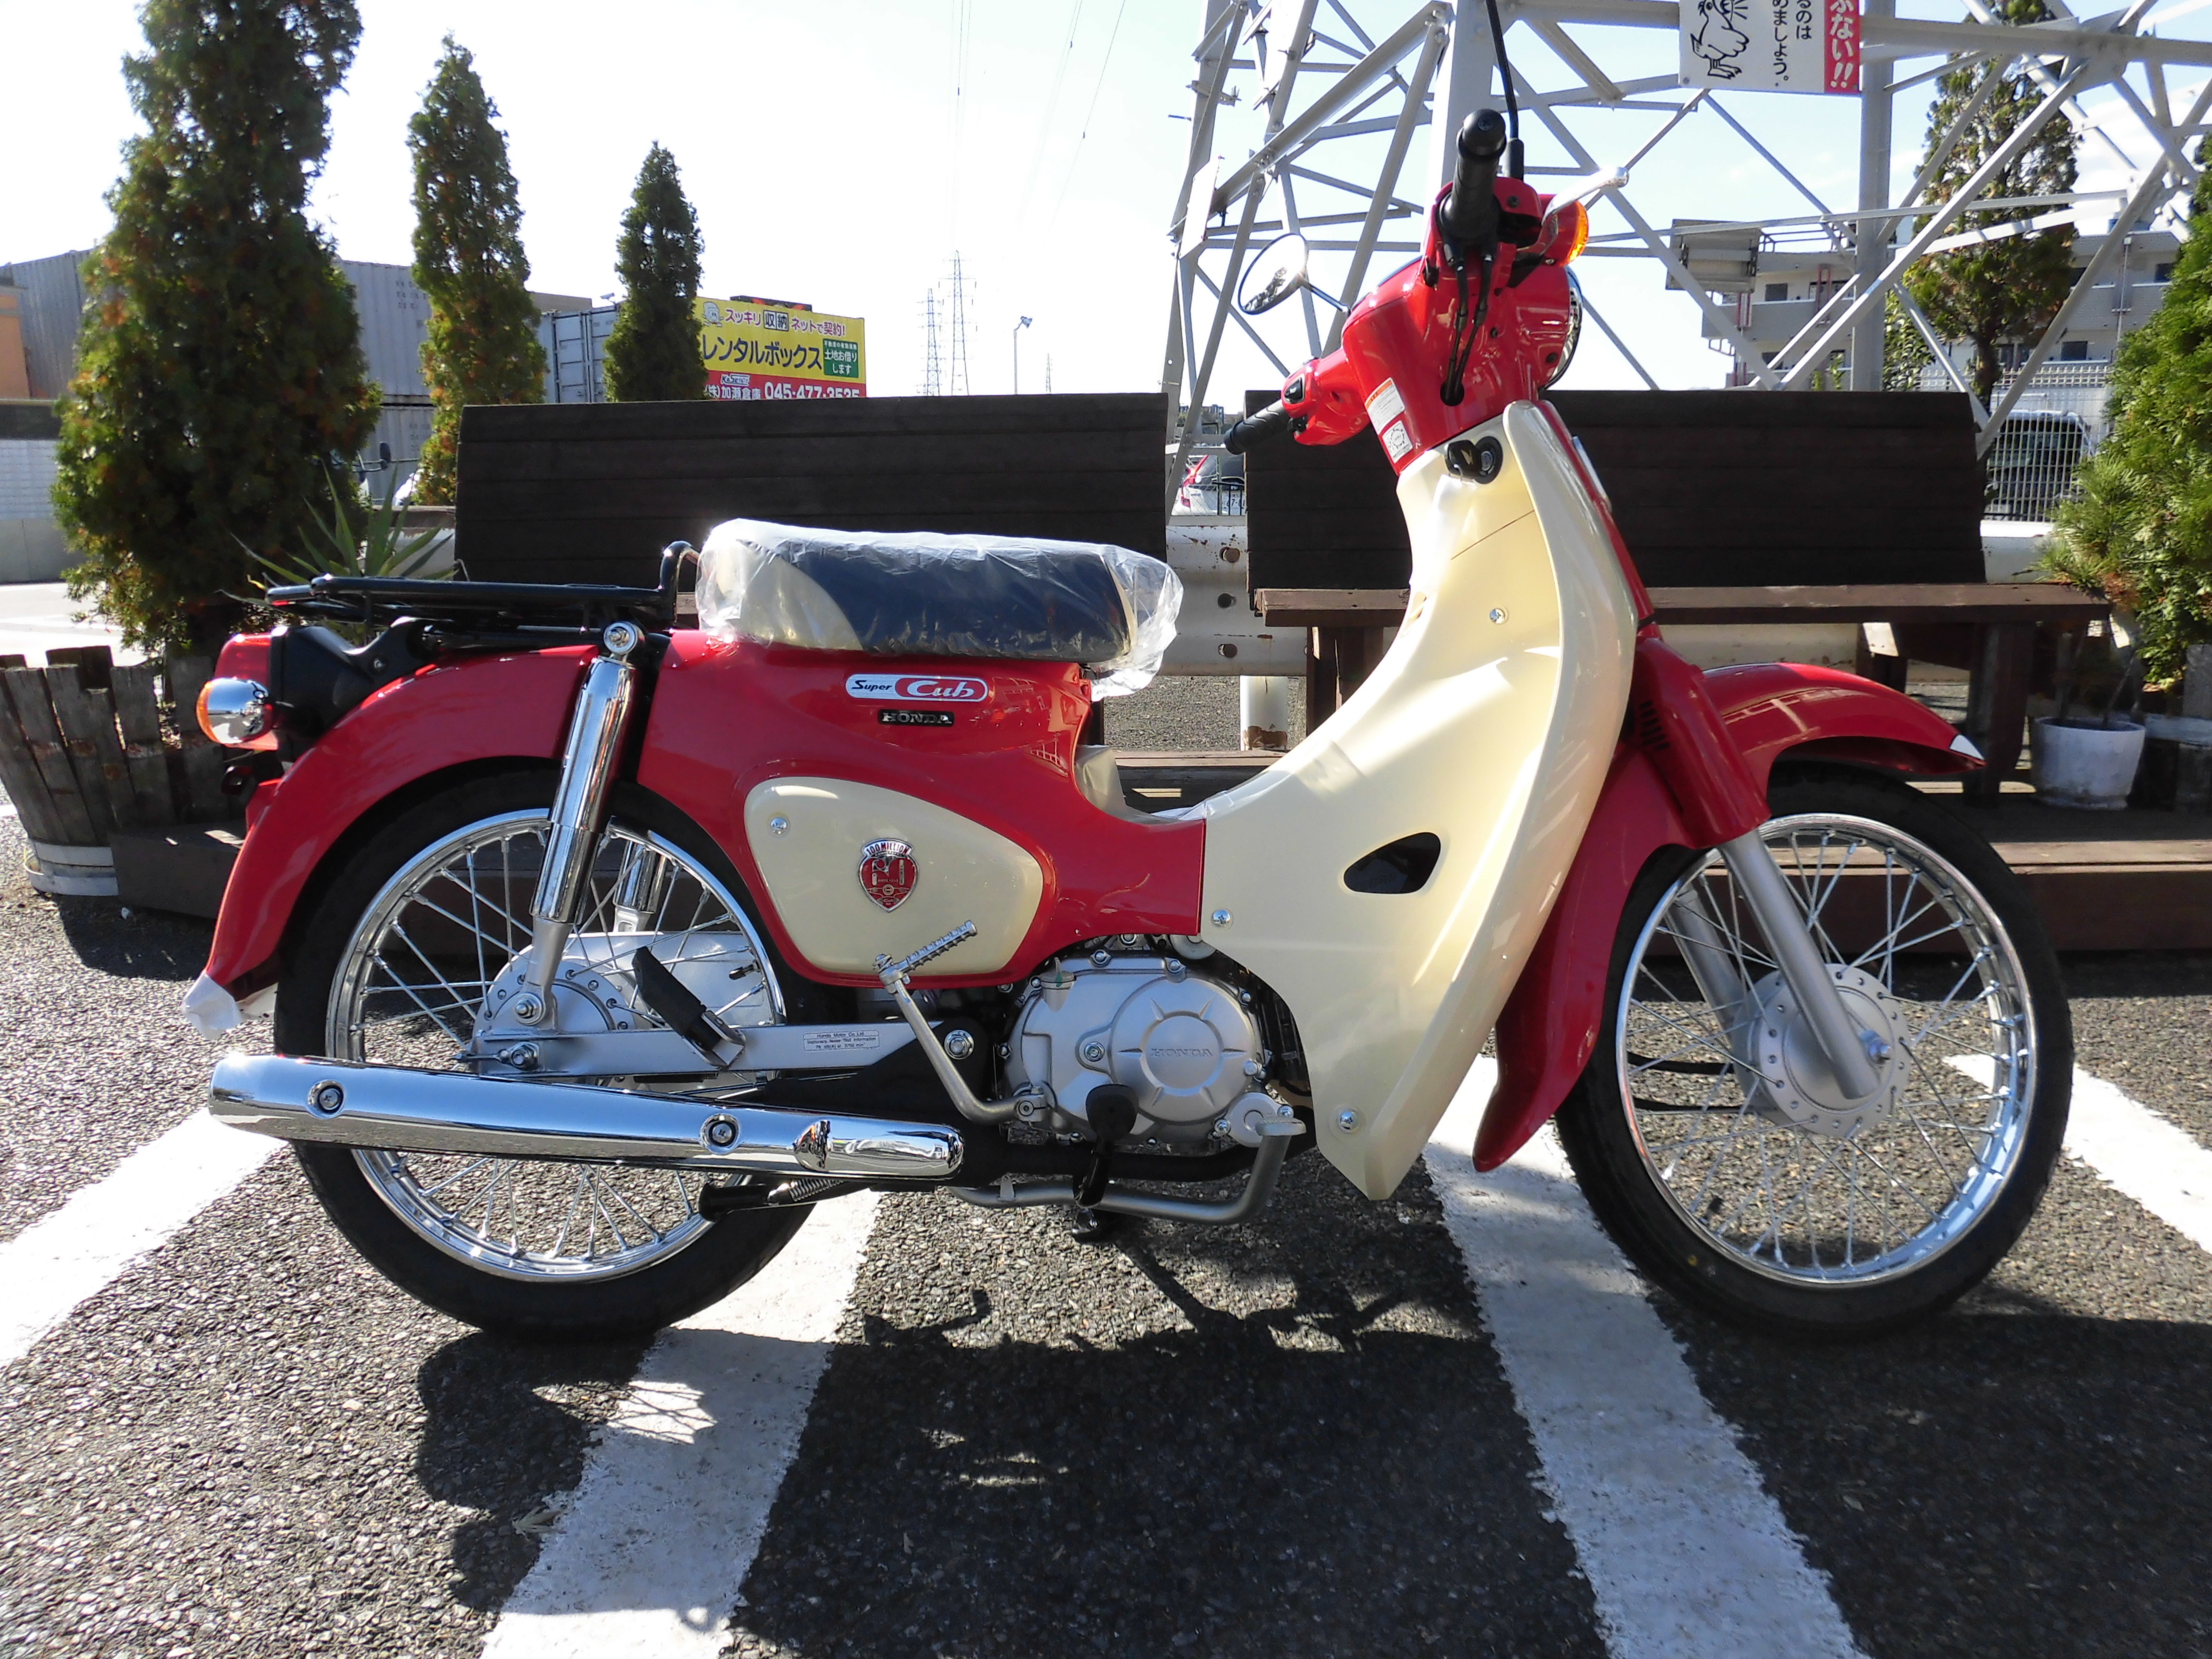 スーパーカブ110 60th 入荷しました 最新情報 U Media ユーメディア 中古バイク 新車バイク探しの決定版 神奈川 東京でバイク探すならユーメディア